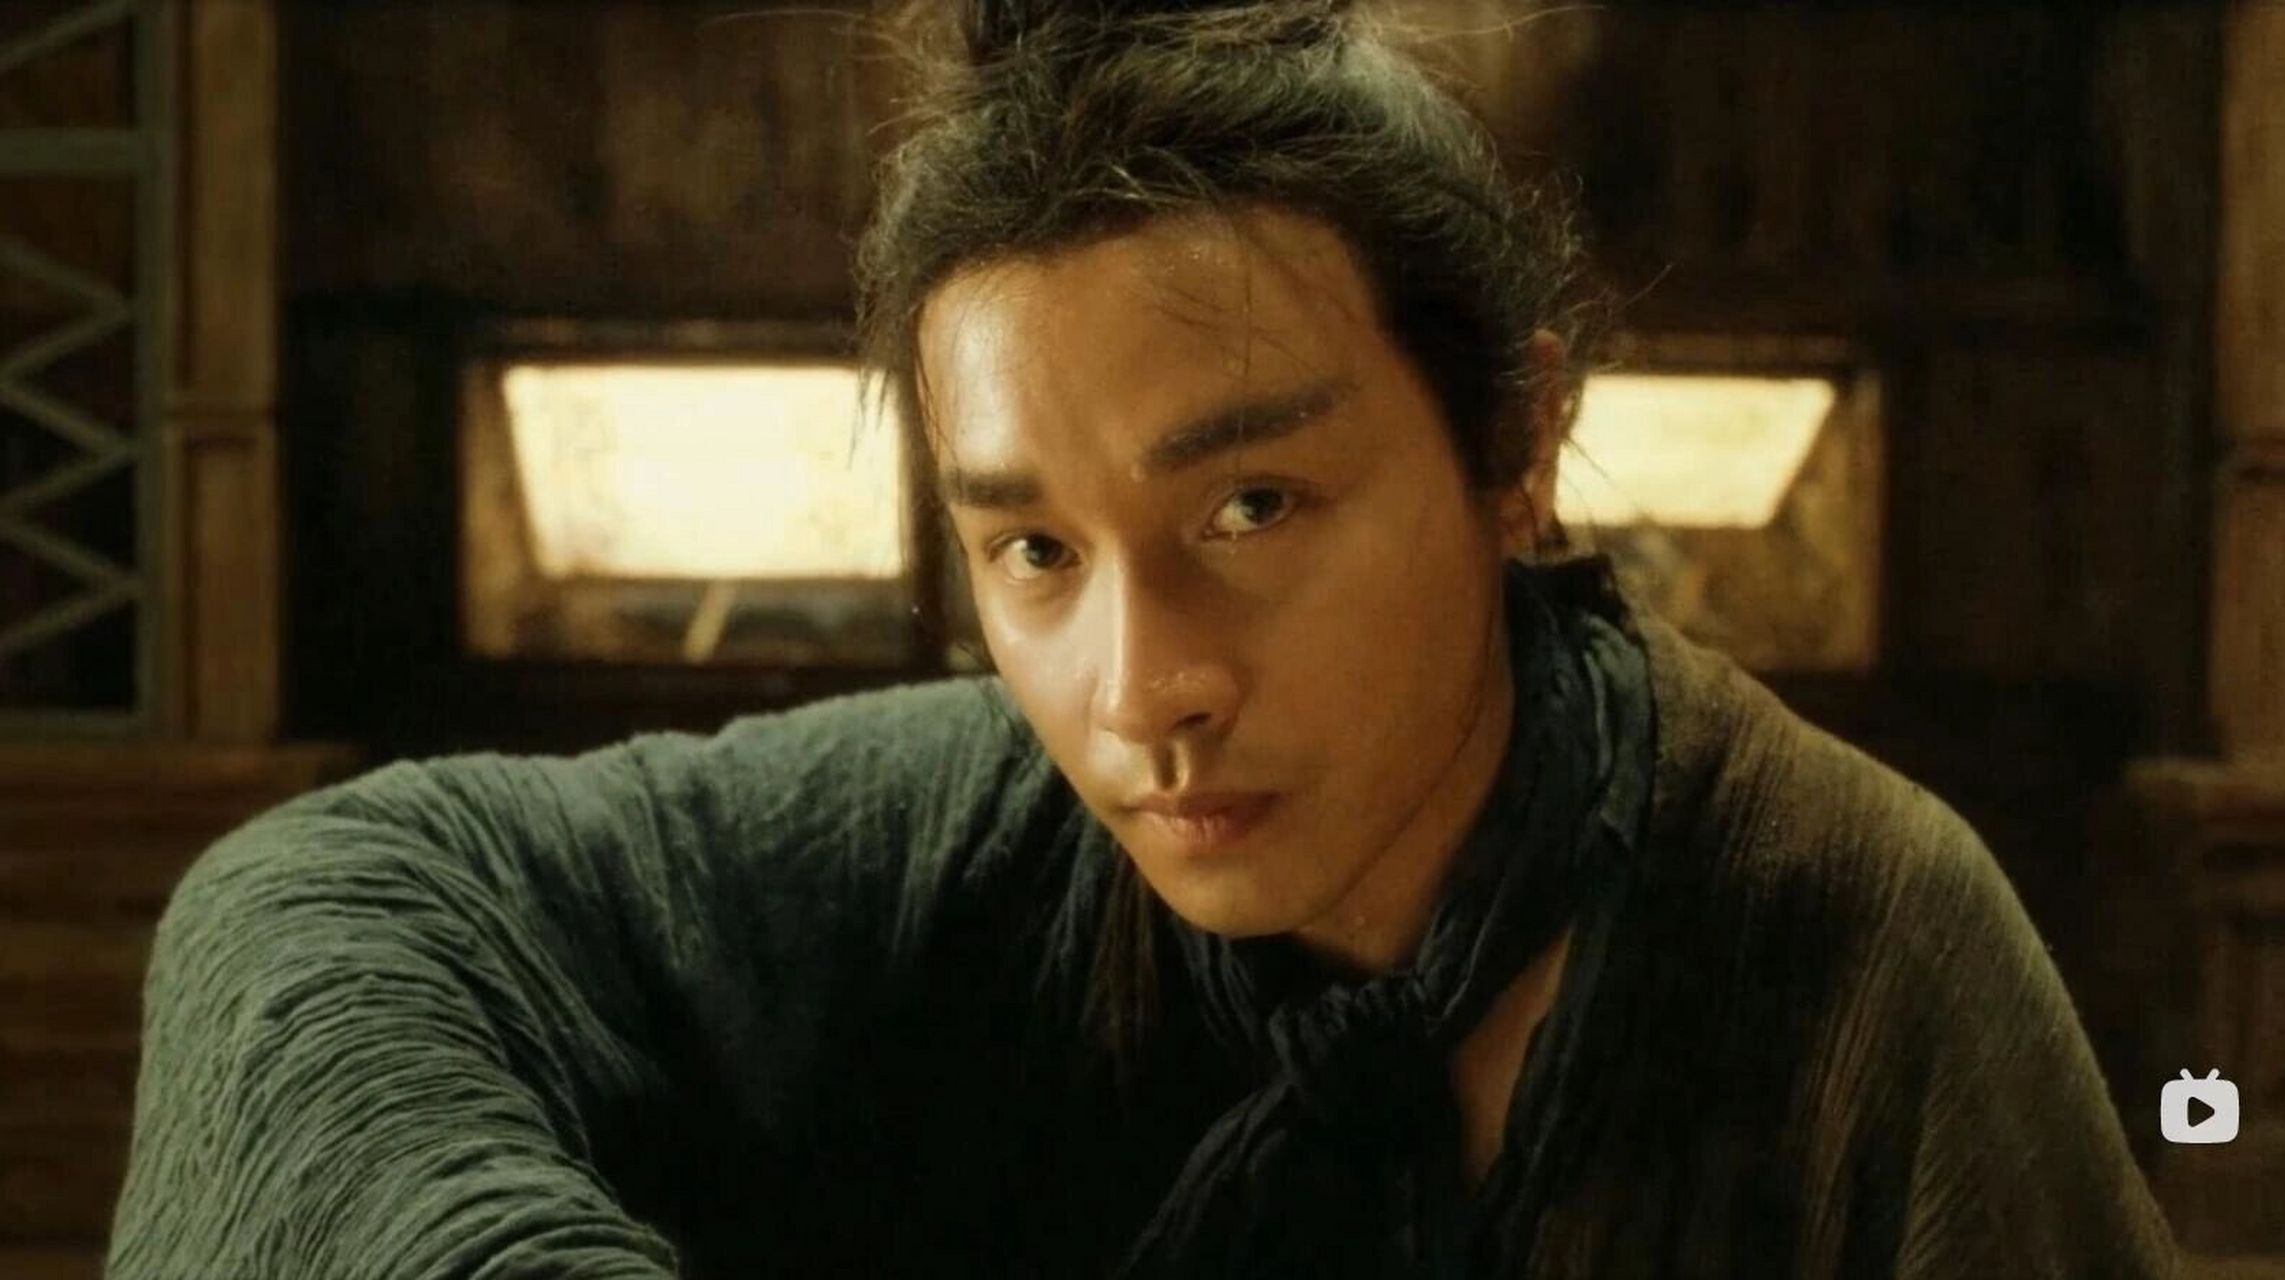 张国荣在《东邪西毒》被删减的镜头 第一个镜头的哥哥,还是没胡子的